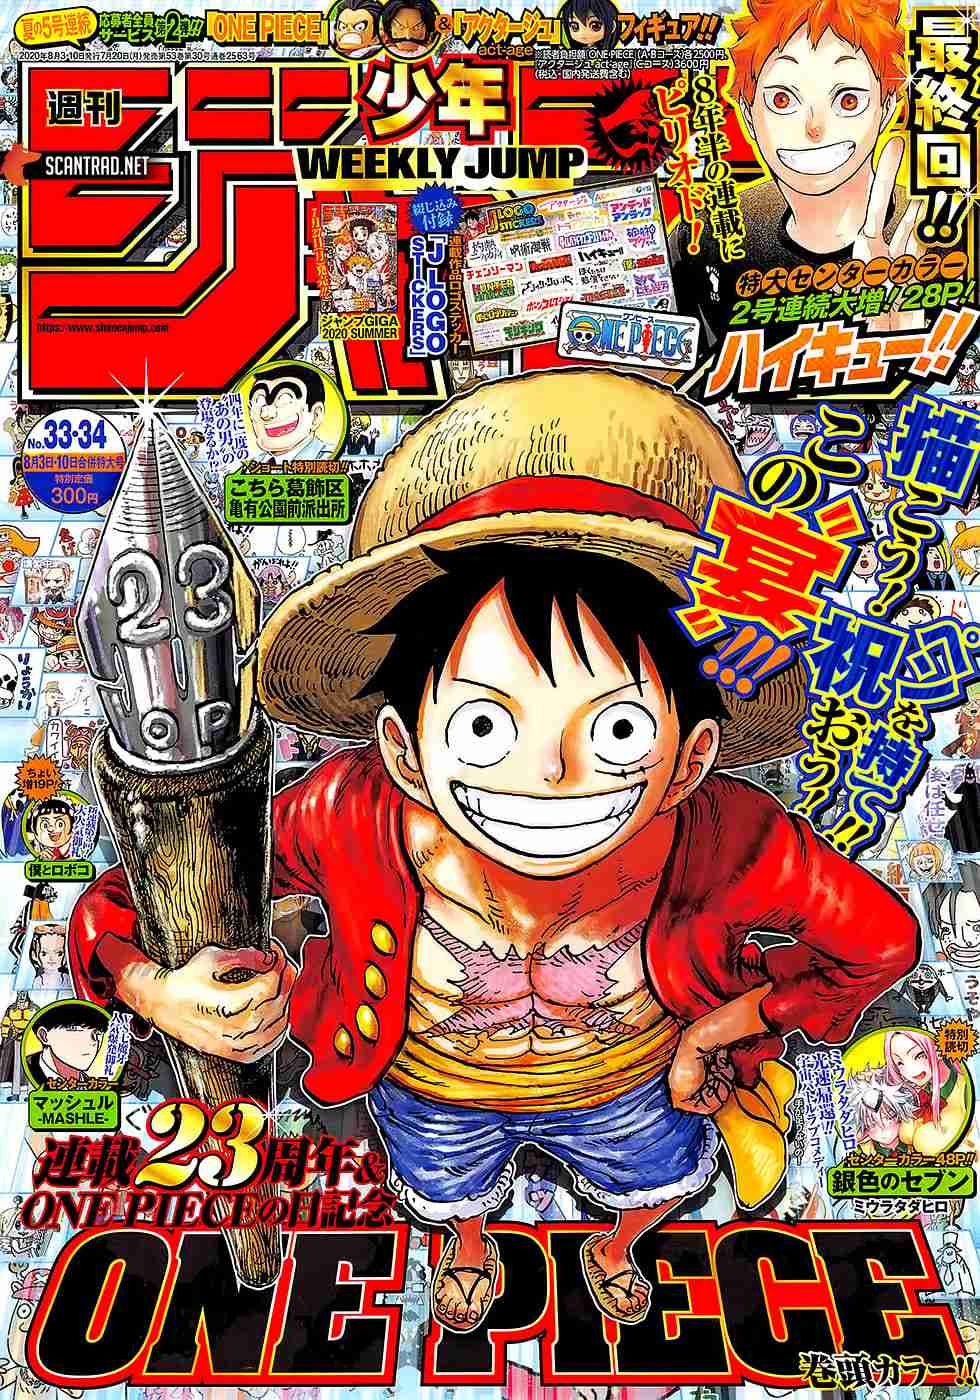 One Piece Ch. 985 The New Onigashima Plan